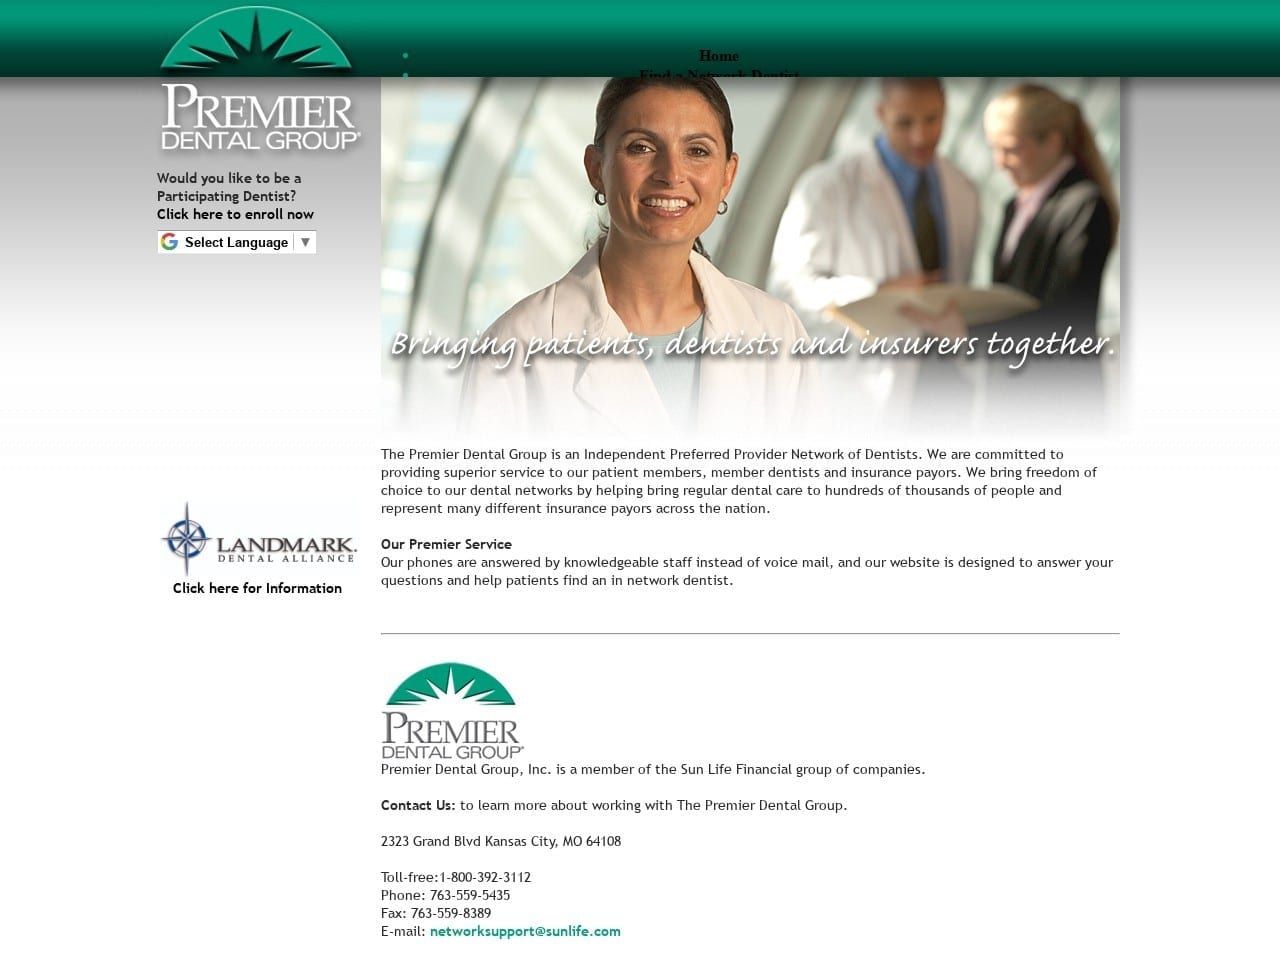 Premier Dental Website Screenshot from premier-dental.com